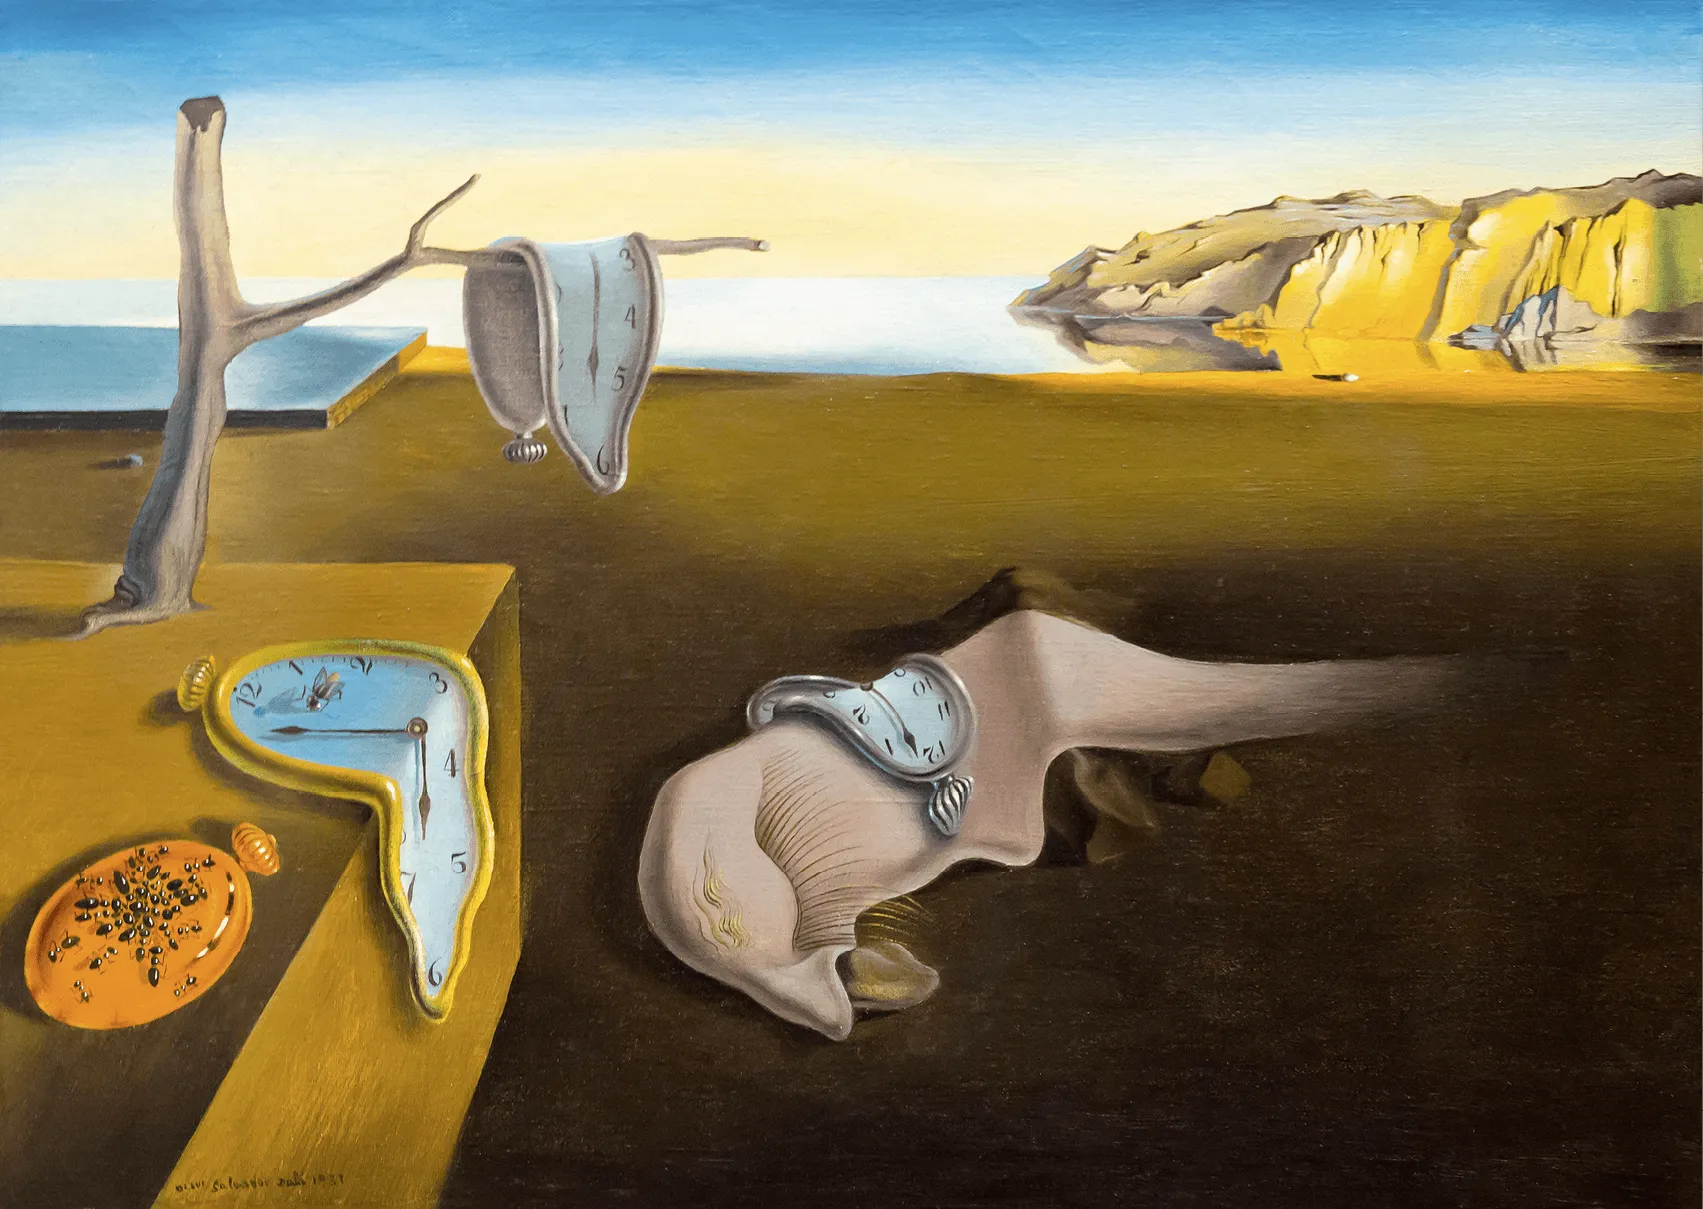 Salvador Dalí, La persistencia de la memoria, 1931